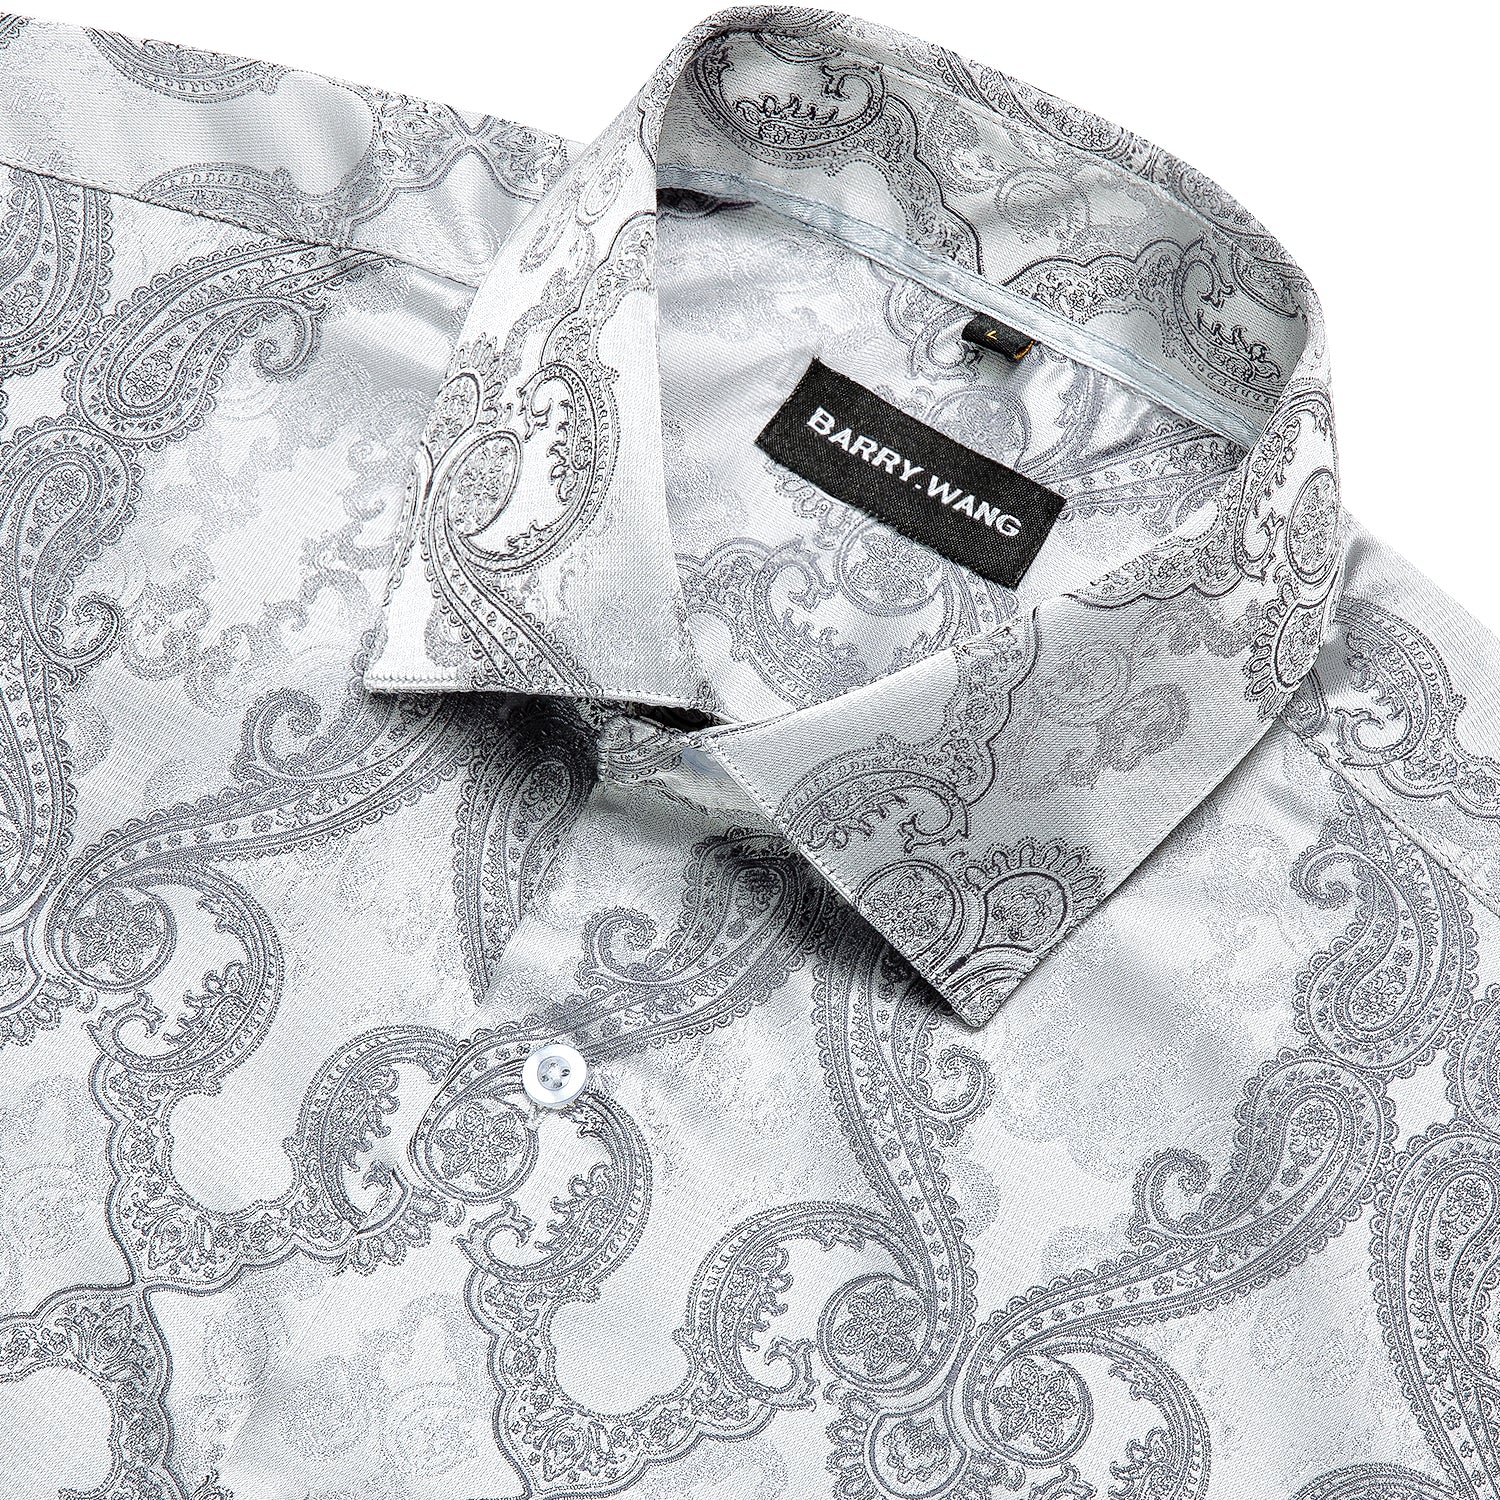 Barry.wang Long Sleeve Shirt Novelty Silver Paisley Silk Men's Button Up Shirt